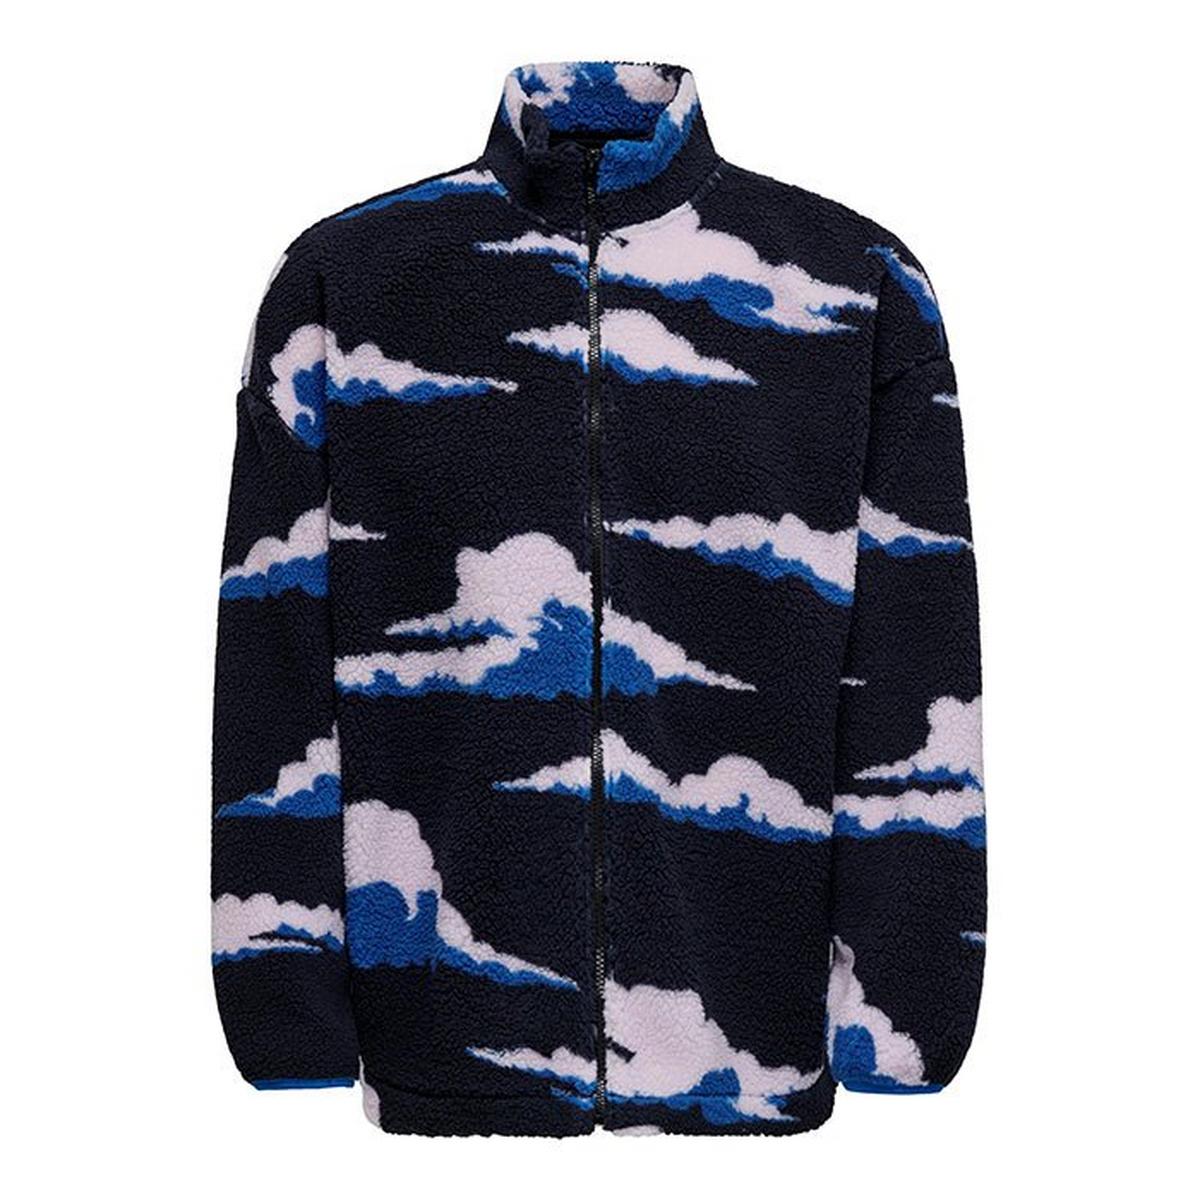 Men's Printed Full-Zip Fleece Jacket